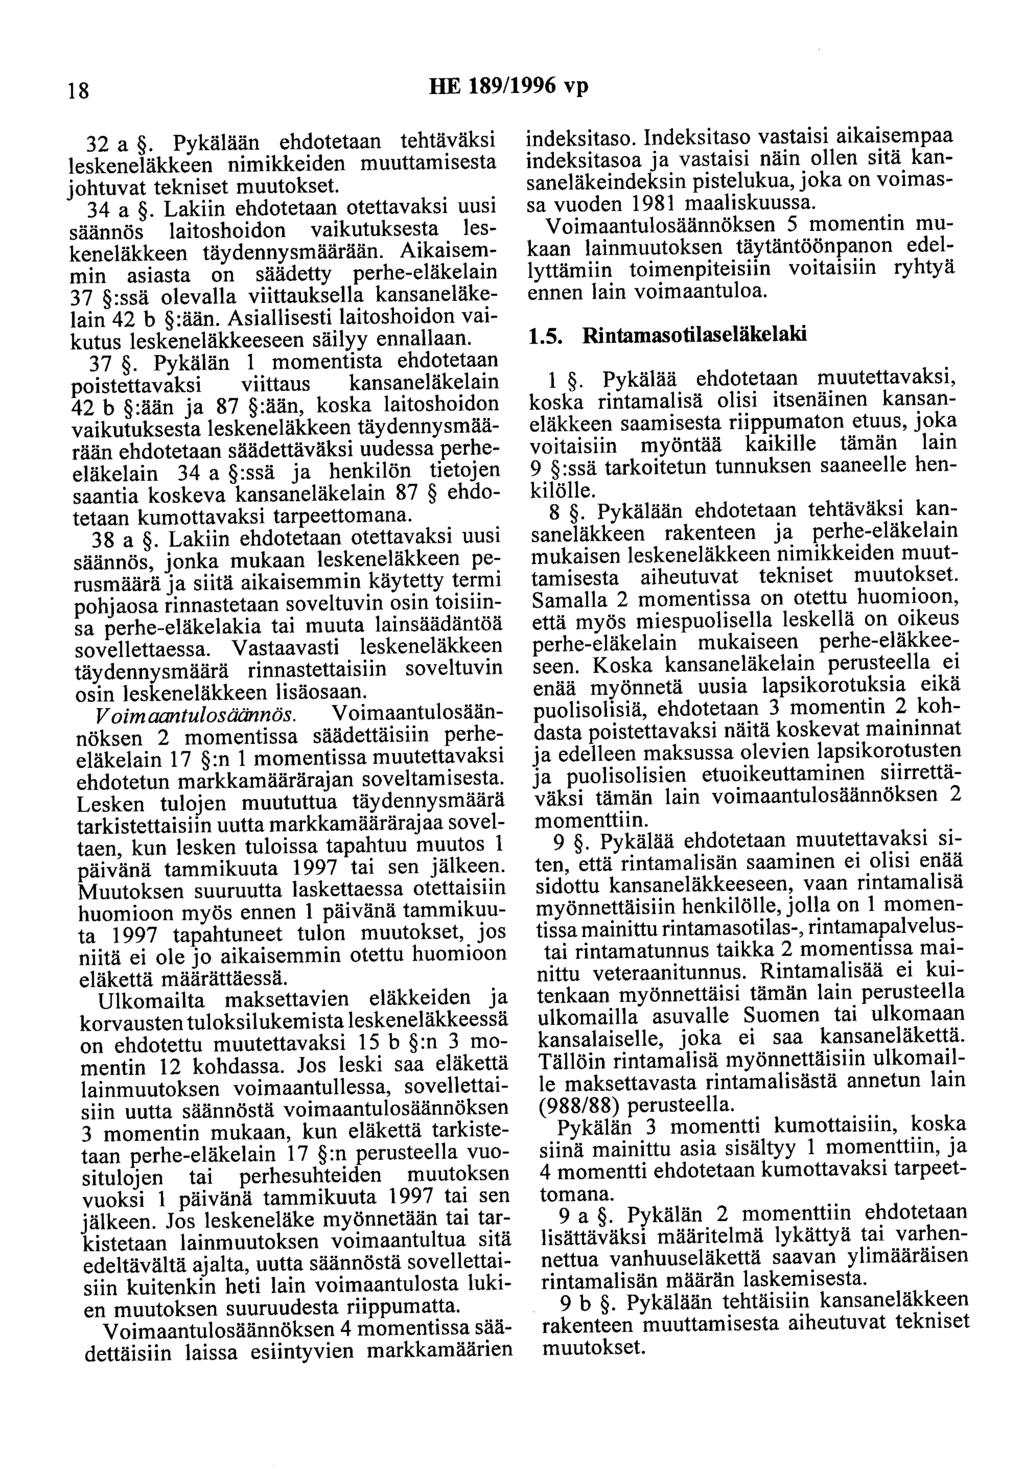 18 HE 189/1996 vp 32 a. Pykälään ehdotetaan tehtäväksi leskeneläkkeen nimikkeiden muuttamisesta johtuvat tekniset muutokset. 34 a.